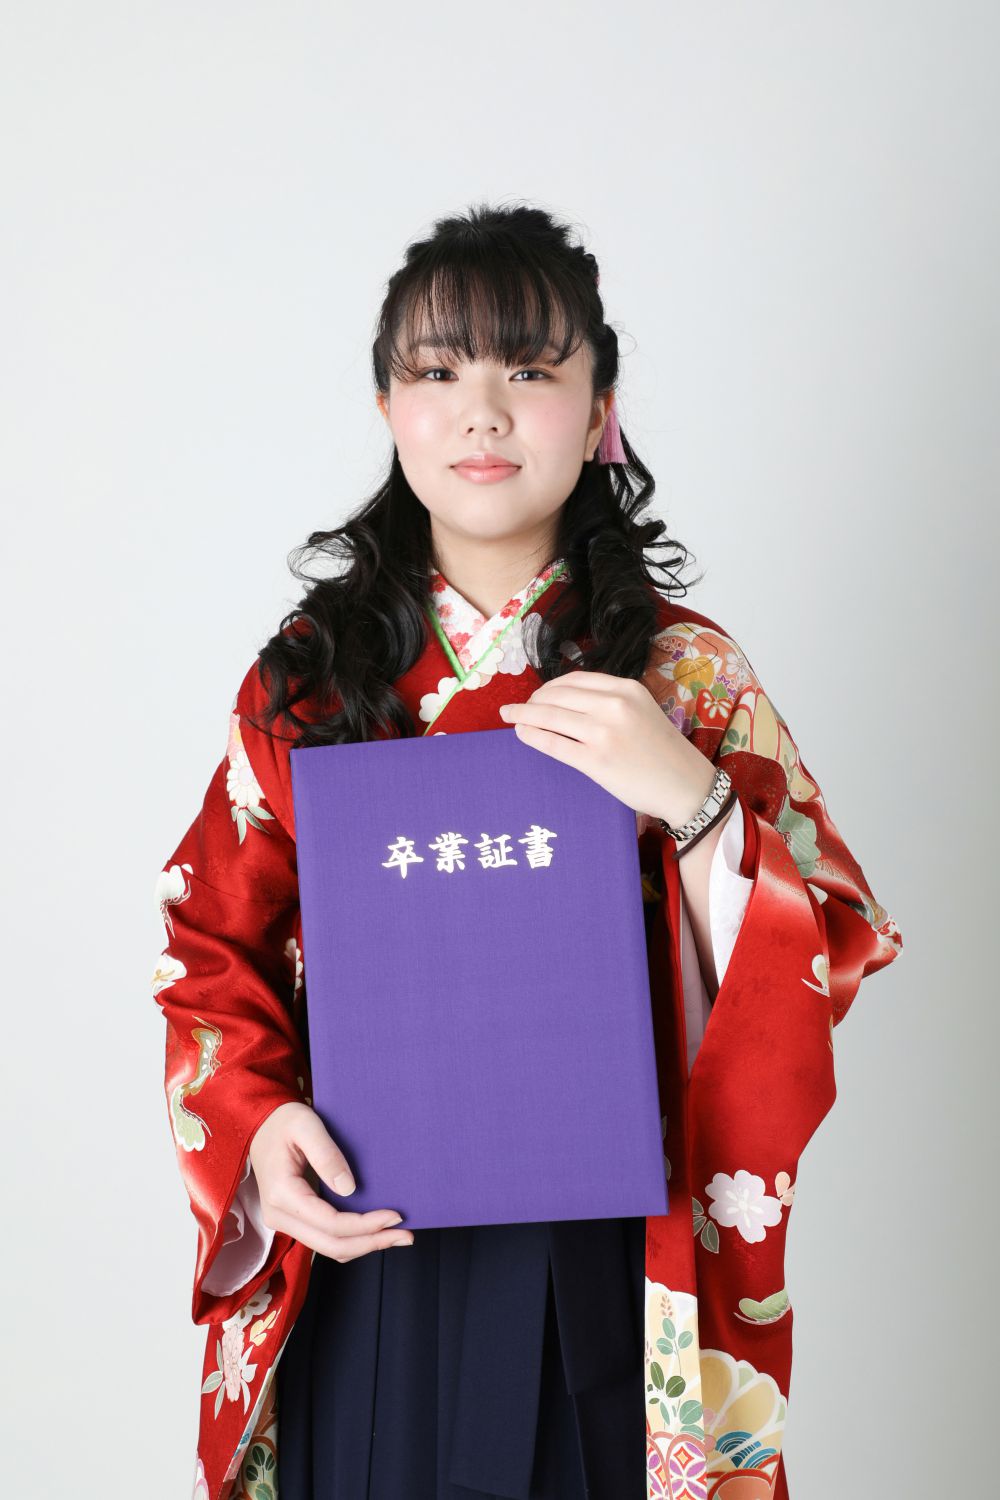 卒業袴 クラシックな袴姿にふんわりしたヘアスタイルがマッチ 埼玉県鴻巣市 樋口屋